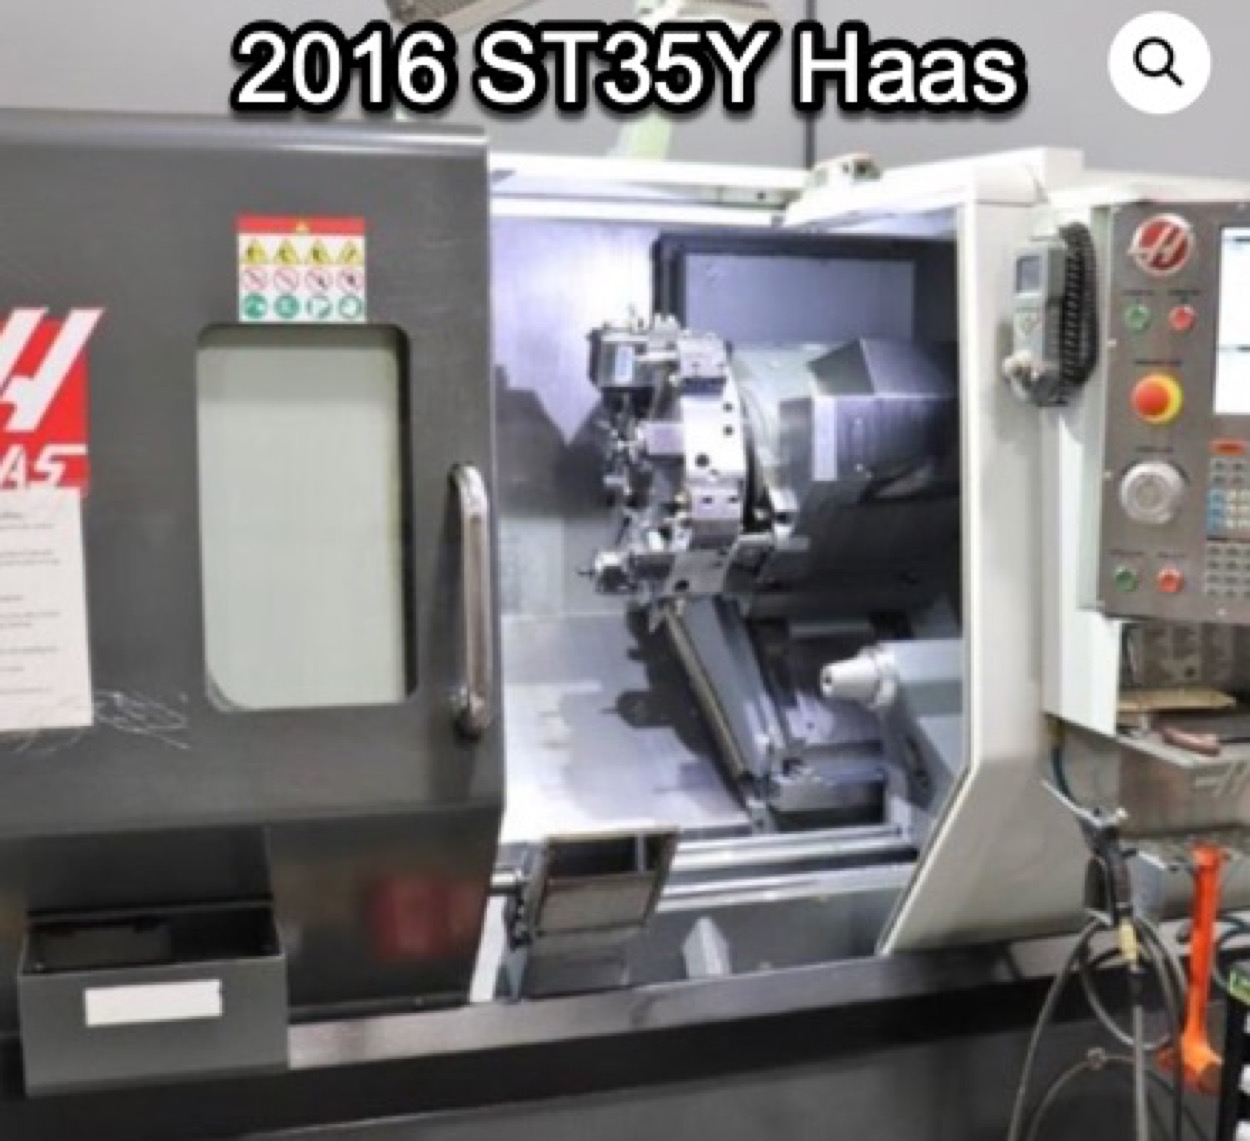 Haas HAAS ST-35Y 2016